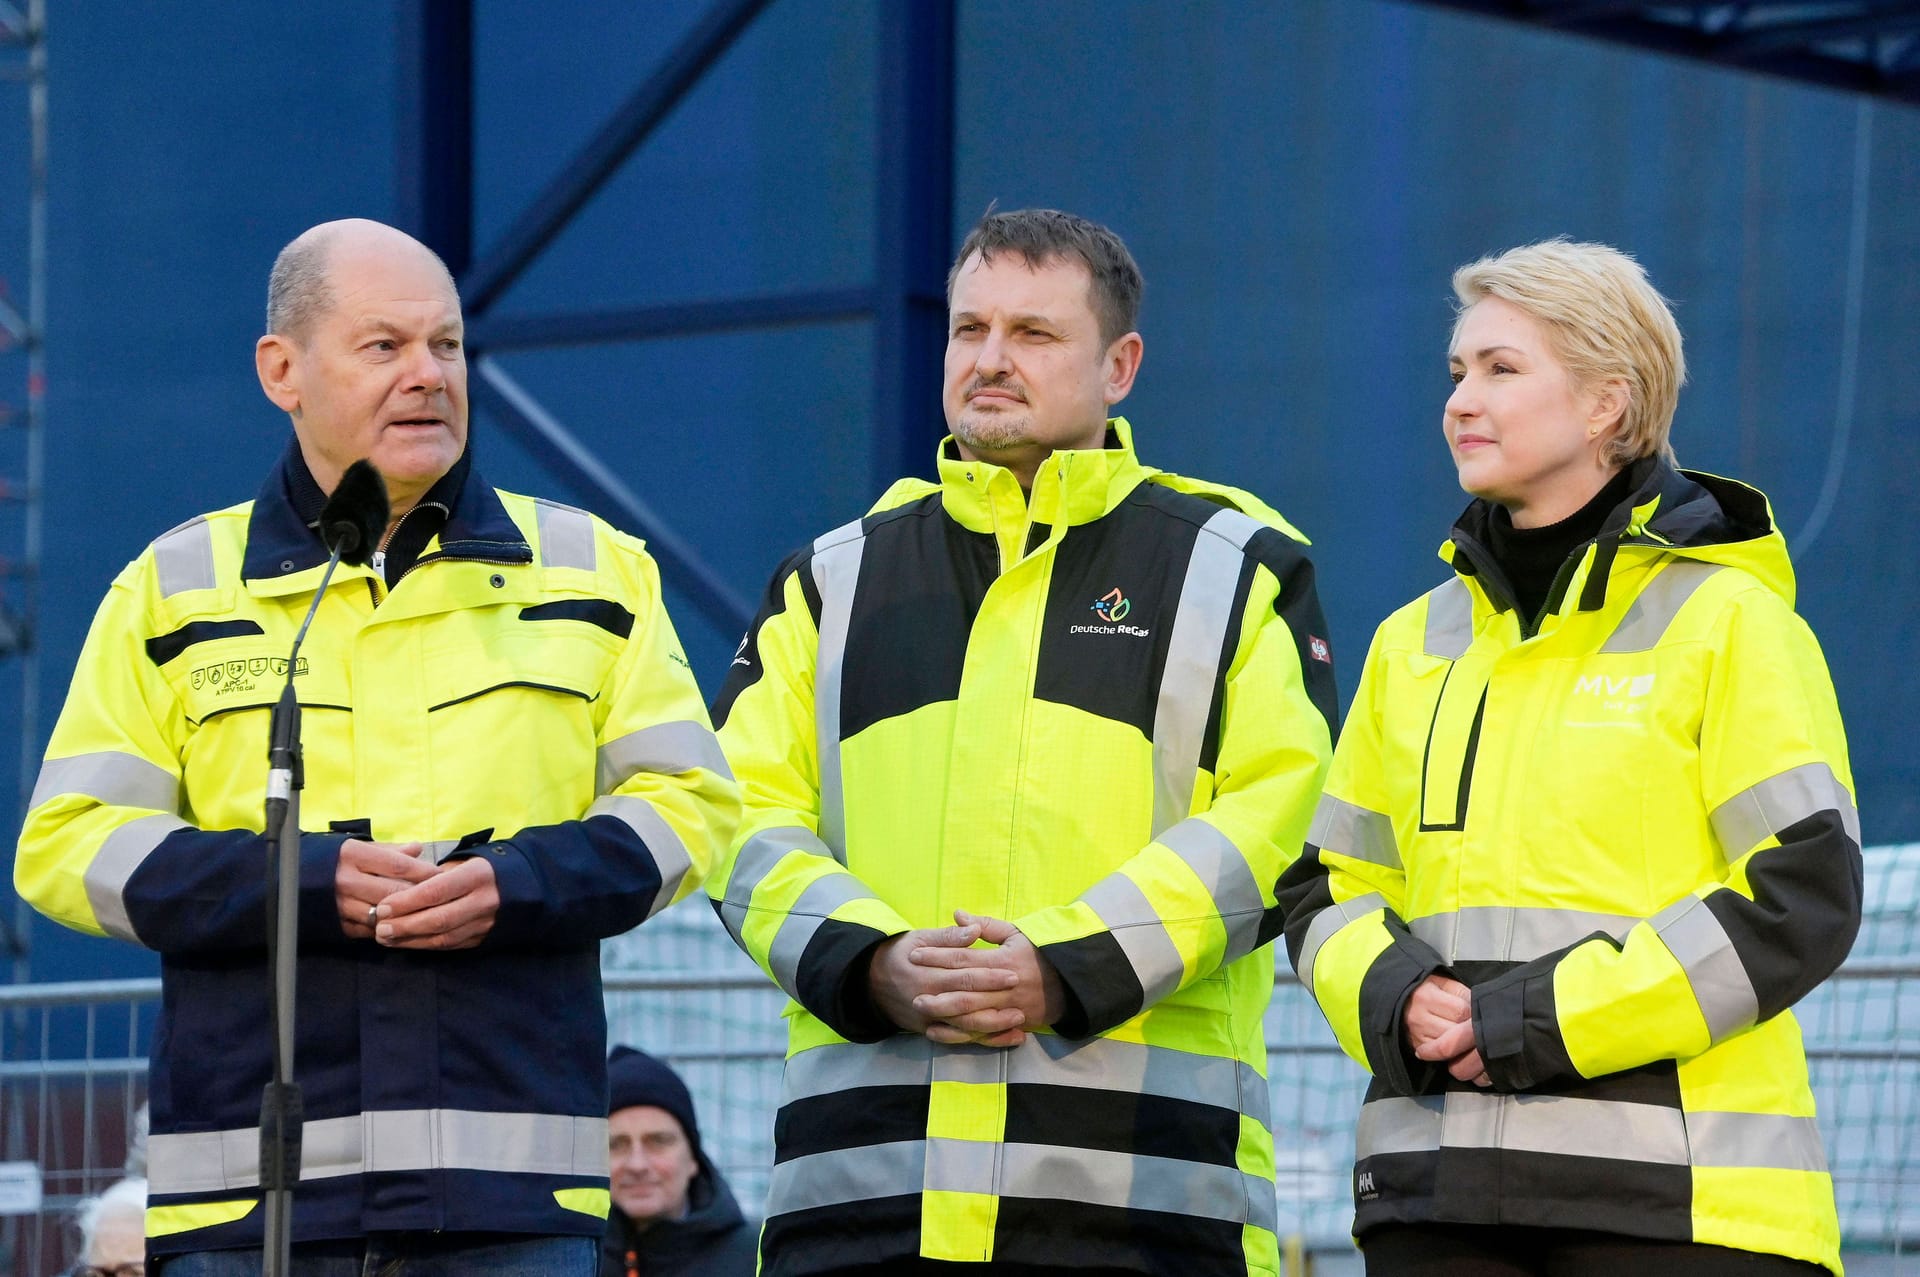 Das ging ausnahmsweise schnell: Olaf Scholz unter anderem mit Ministerpräsidentin Manuela Schwesig bei der offiziellen Inbetriebnahme des LNG-Terminals in Lubmin im Januar.